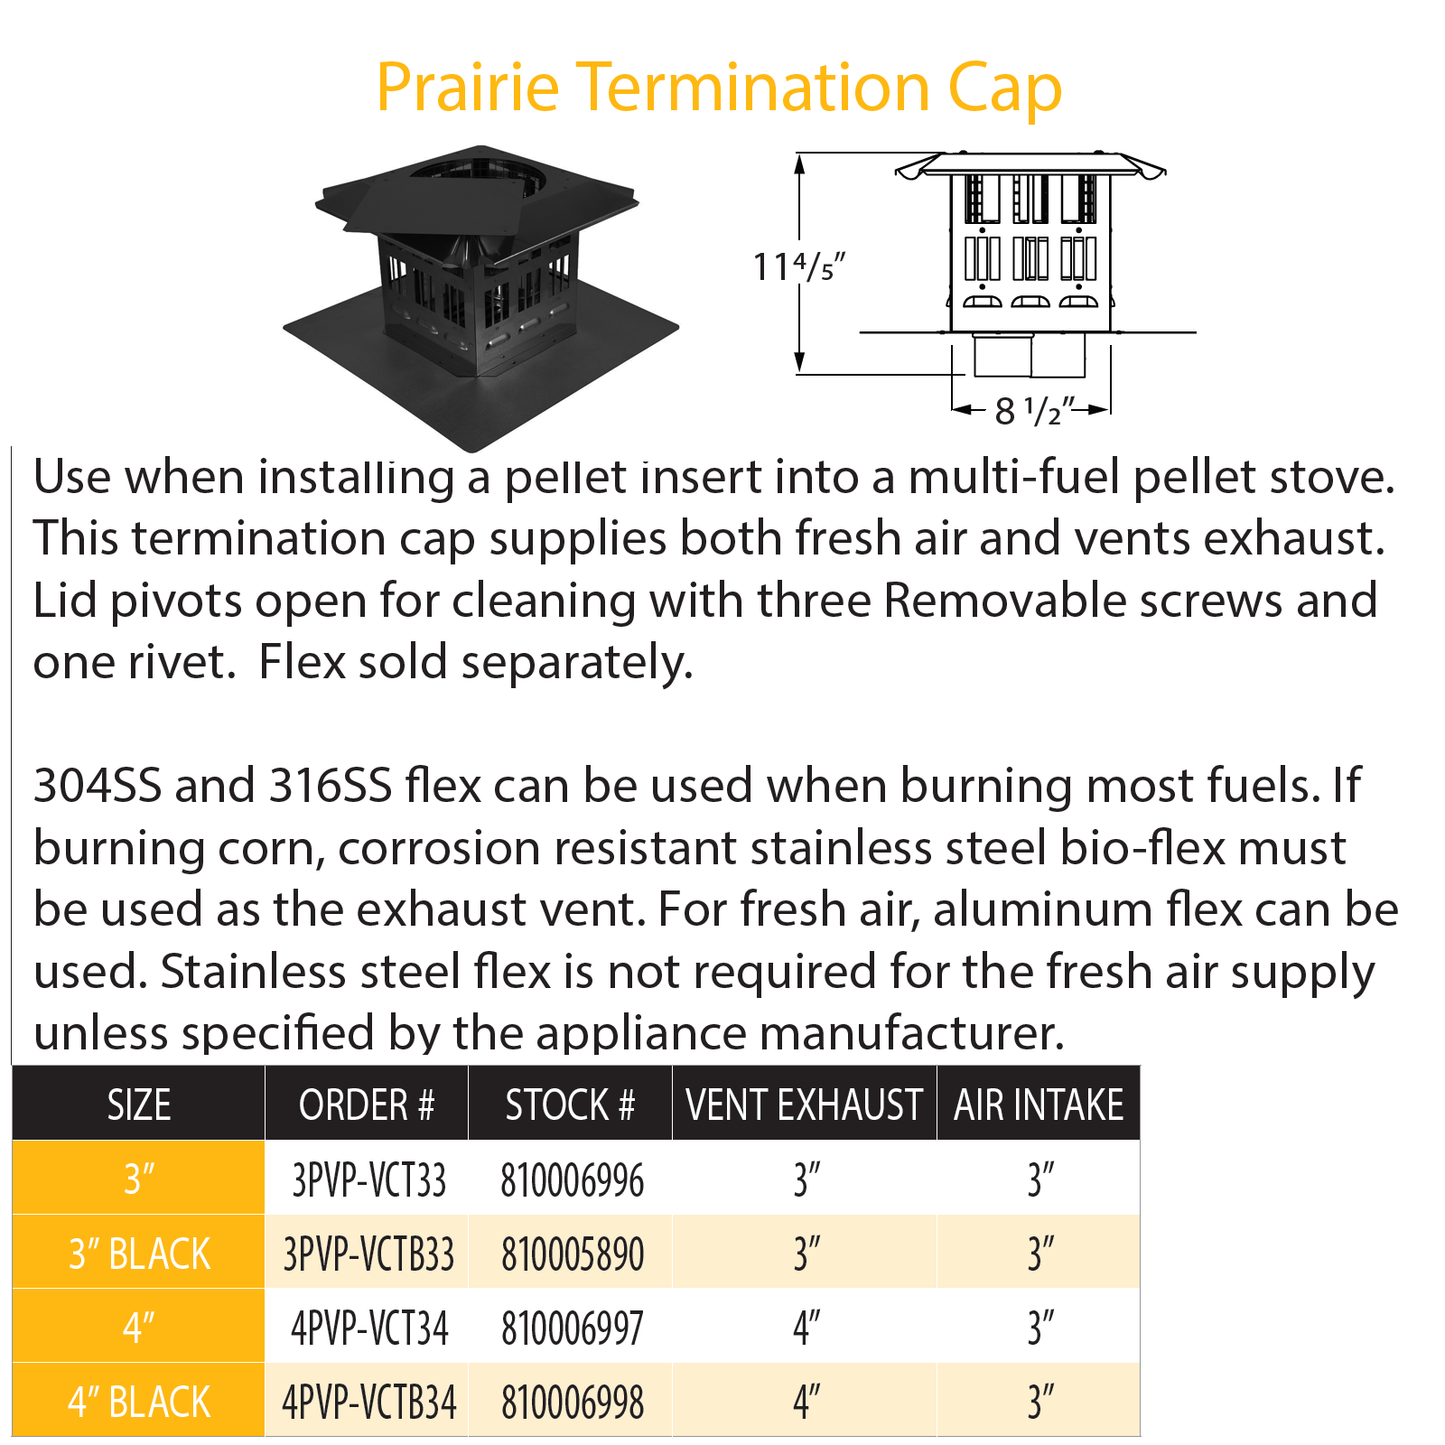 DuraVent Pellet Vent Pro 3" Prairie Termination Cap Blk | 3PVP-VCTB33